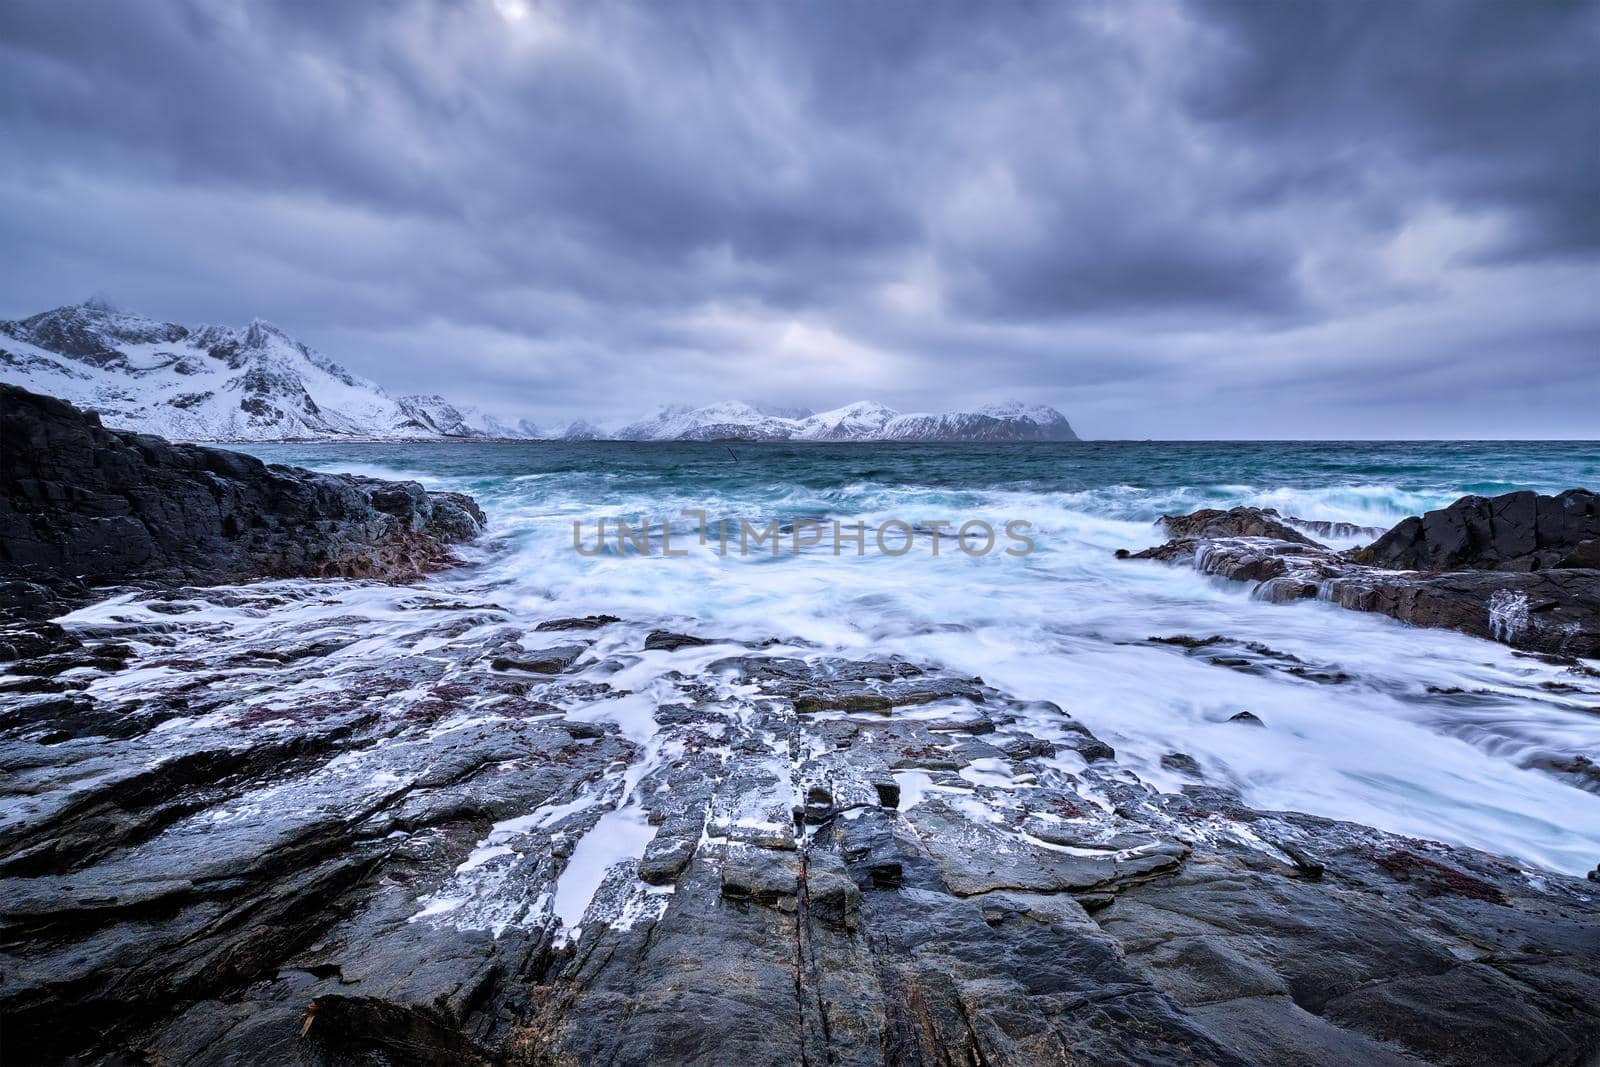 Norwegian Sea waves on rocky coast of Lofoten islands, Norway by dimol